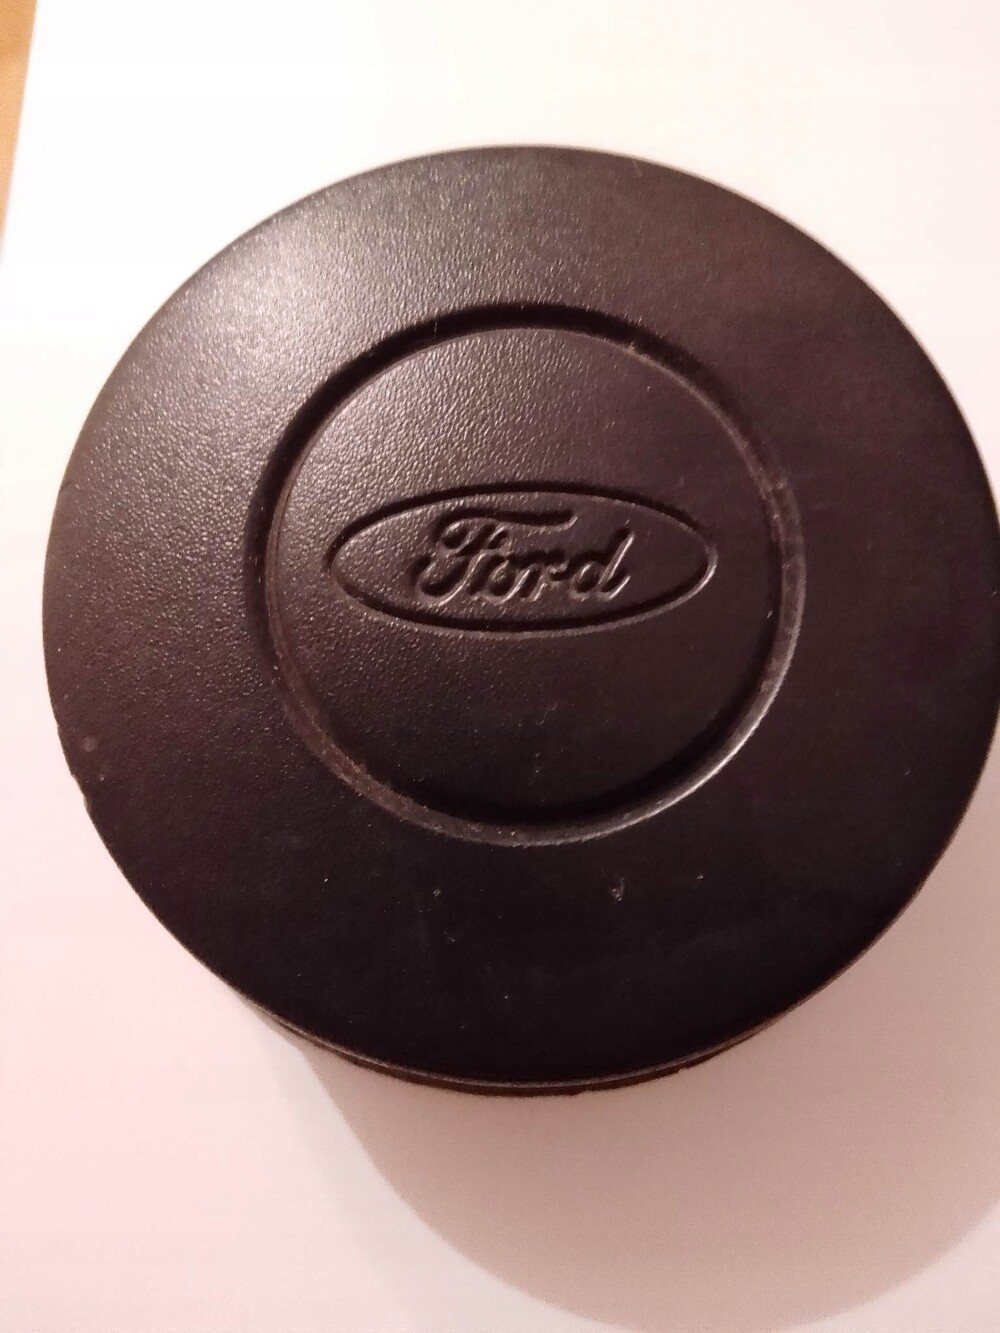 1350611 Специальная заглушка Ford. Заводские колпаки для Форд Транзит Коннект. Купить колпаки на Форд Транзит.